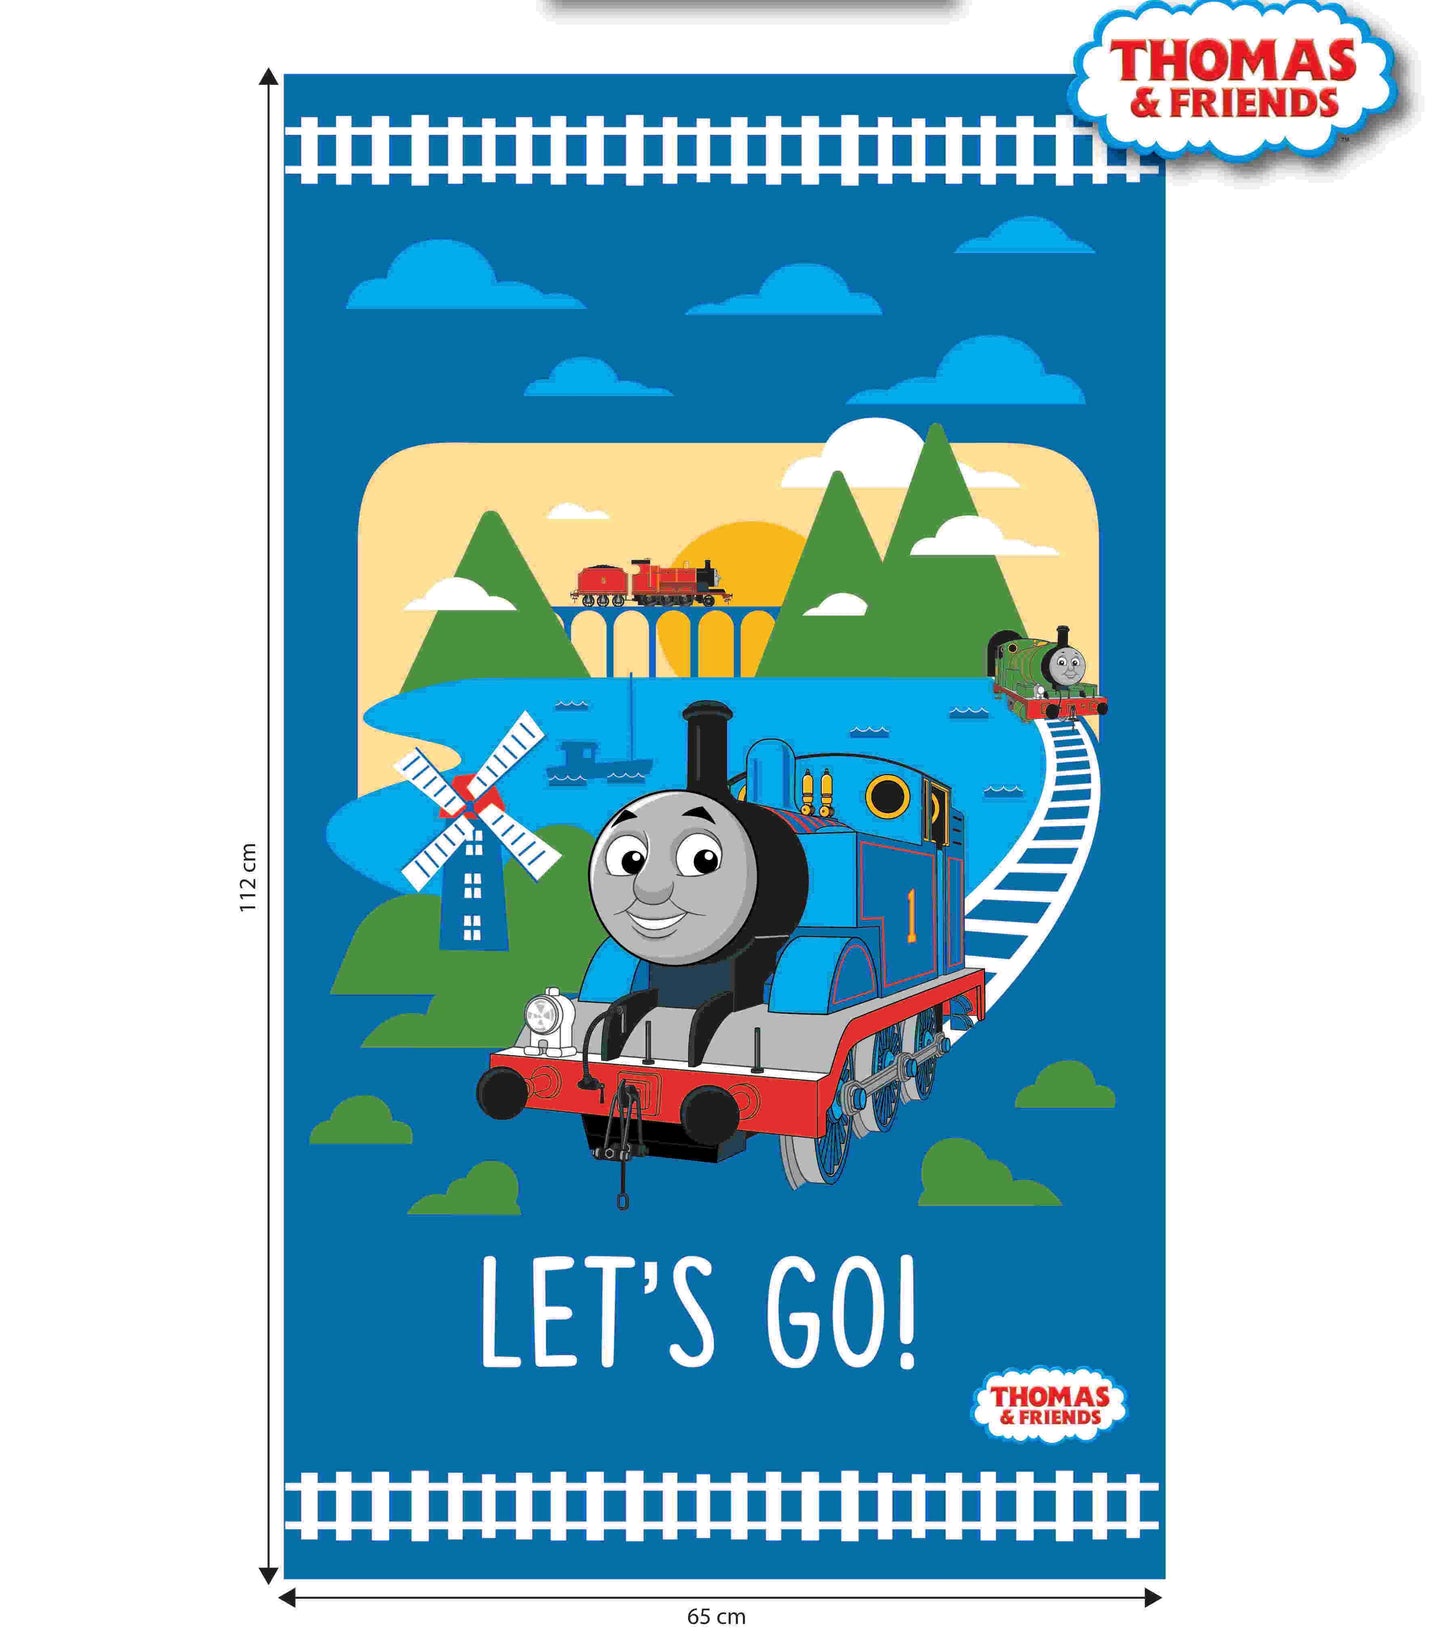 Thomas & Friends Let’s Go! - Cotton Panel